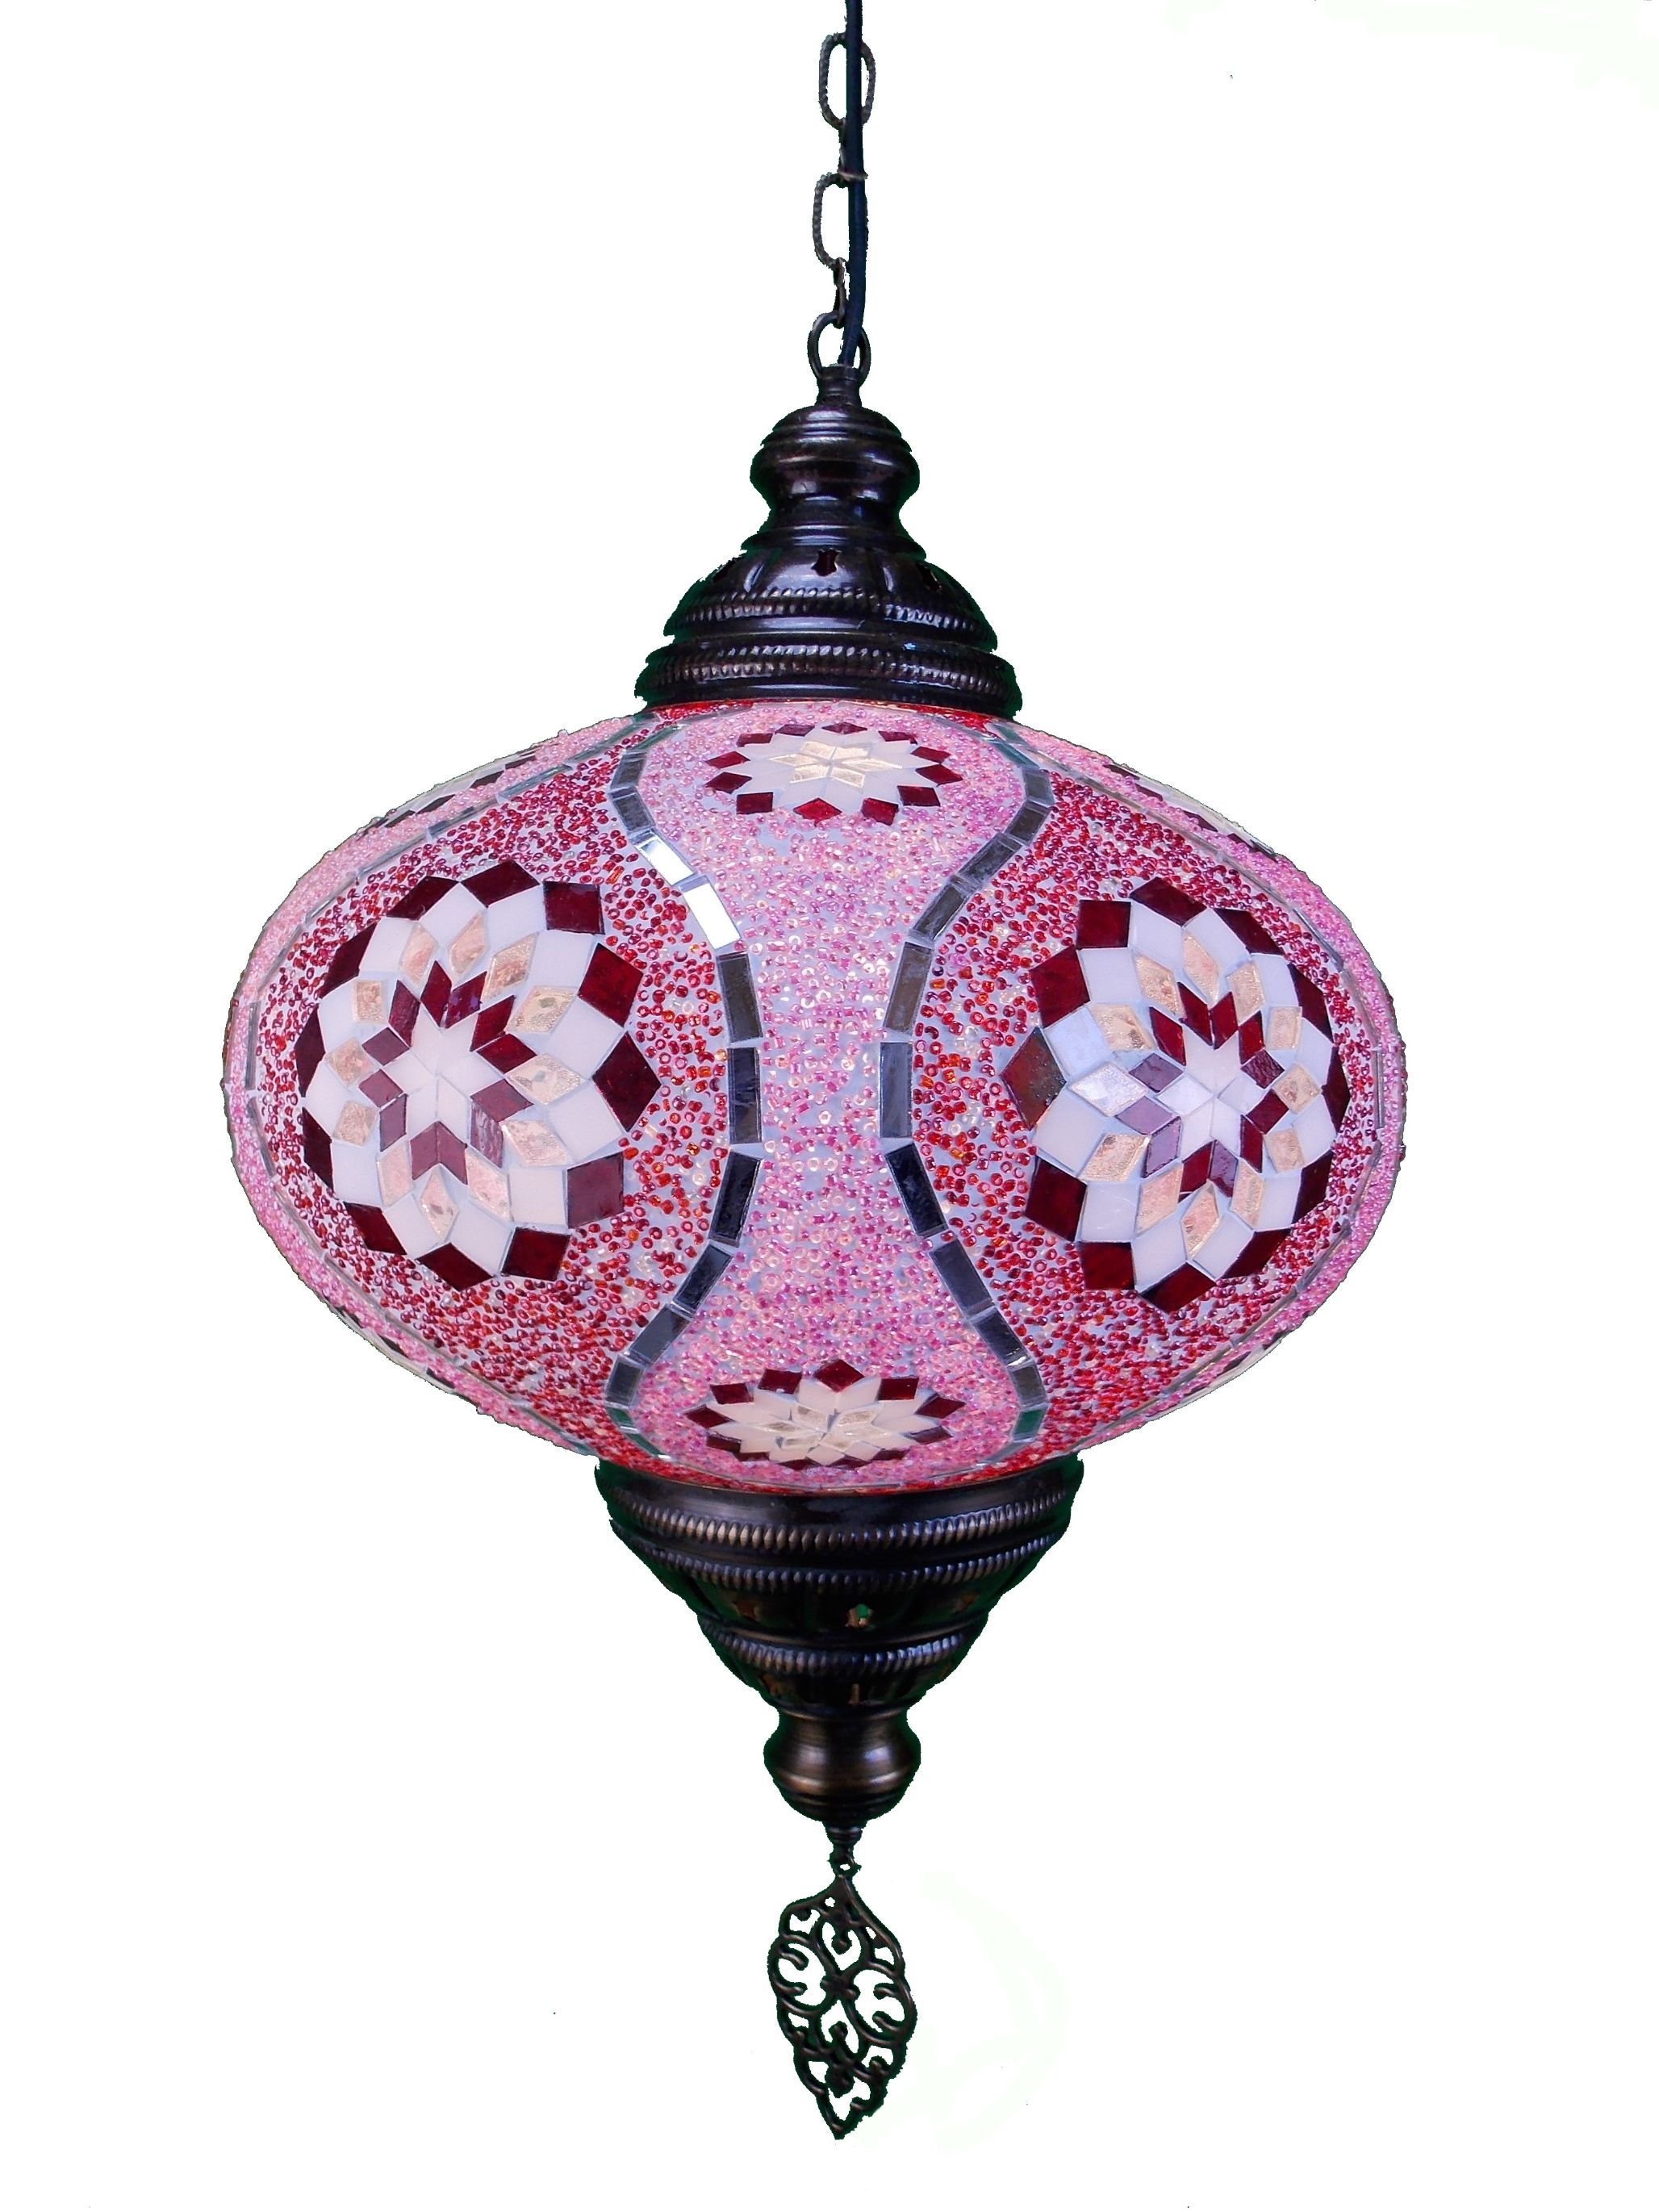 Lustra din Turcia  cu glob de sticla mozaic si lant de metal, lant  73 cm, glob 35 cm